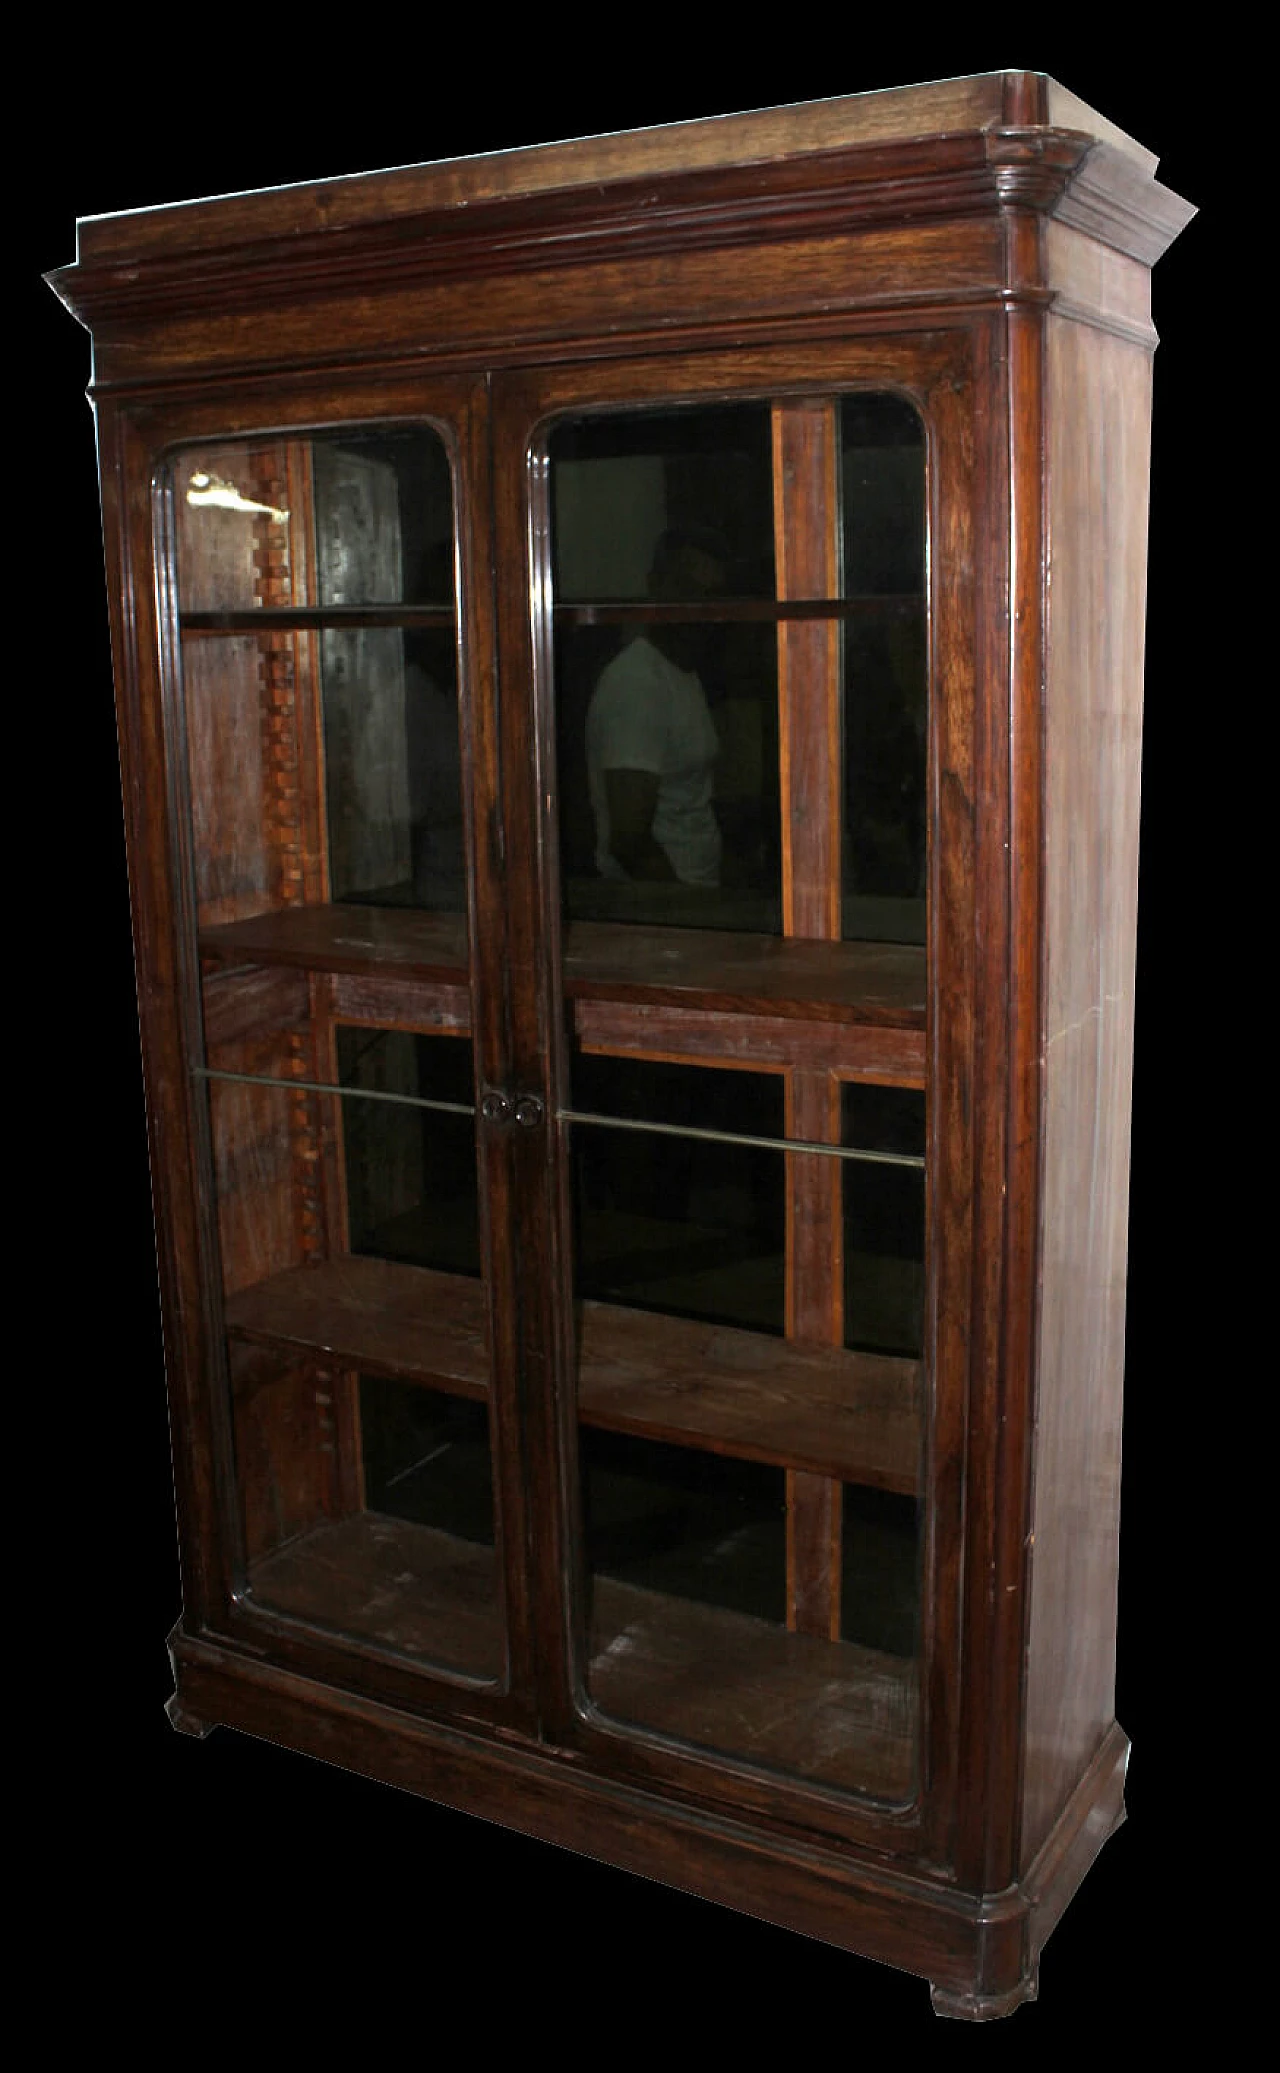 Neapolitan two-door bookcase, '800 1157573